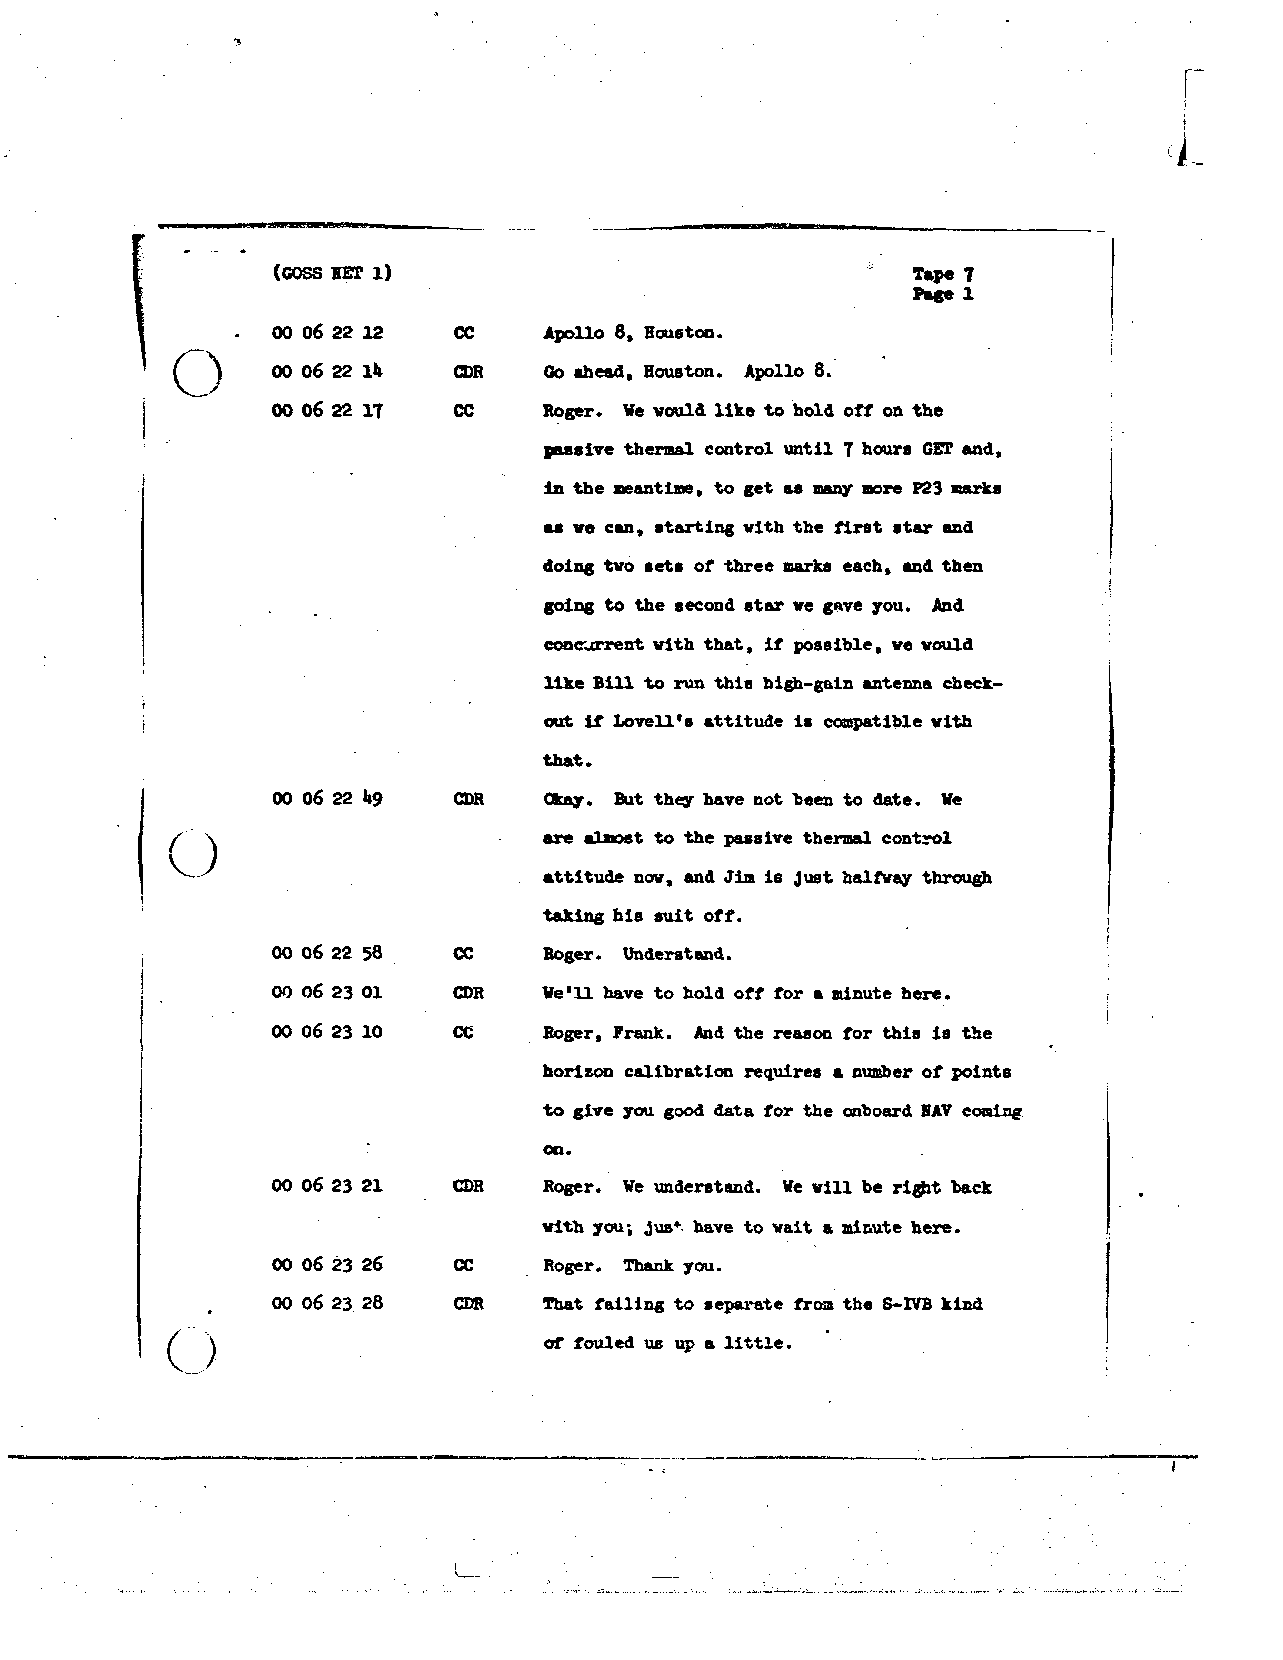 Page 63 of Apollo 8’s original transcript